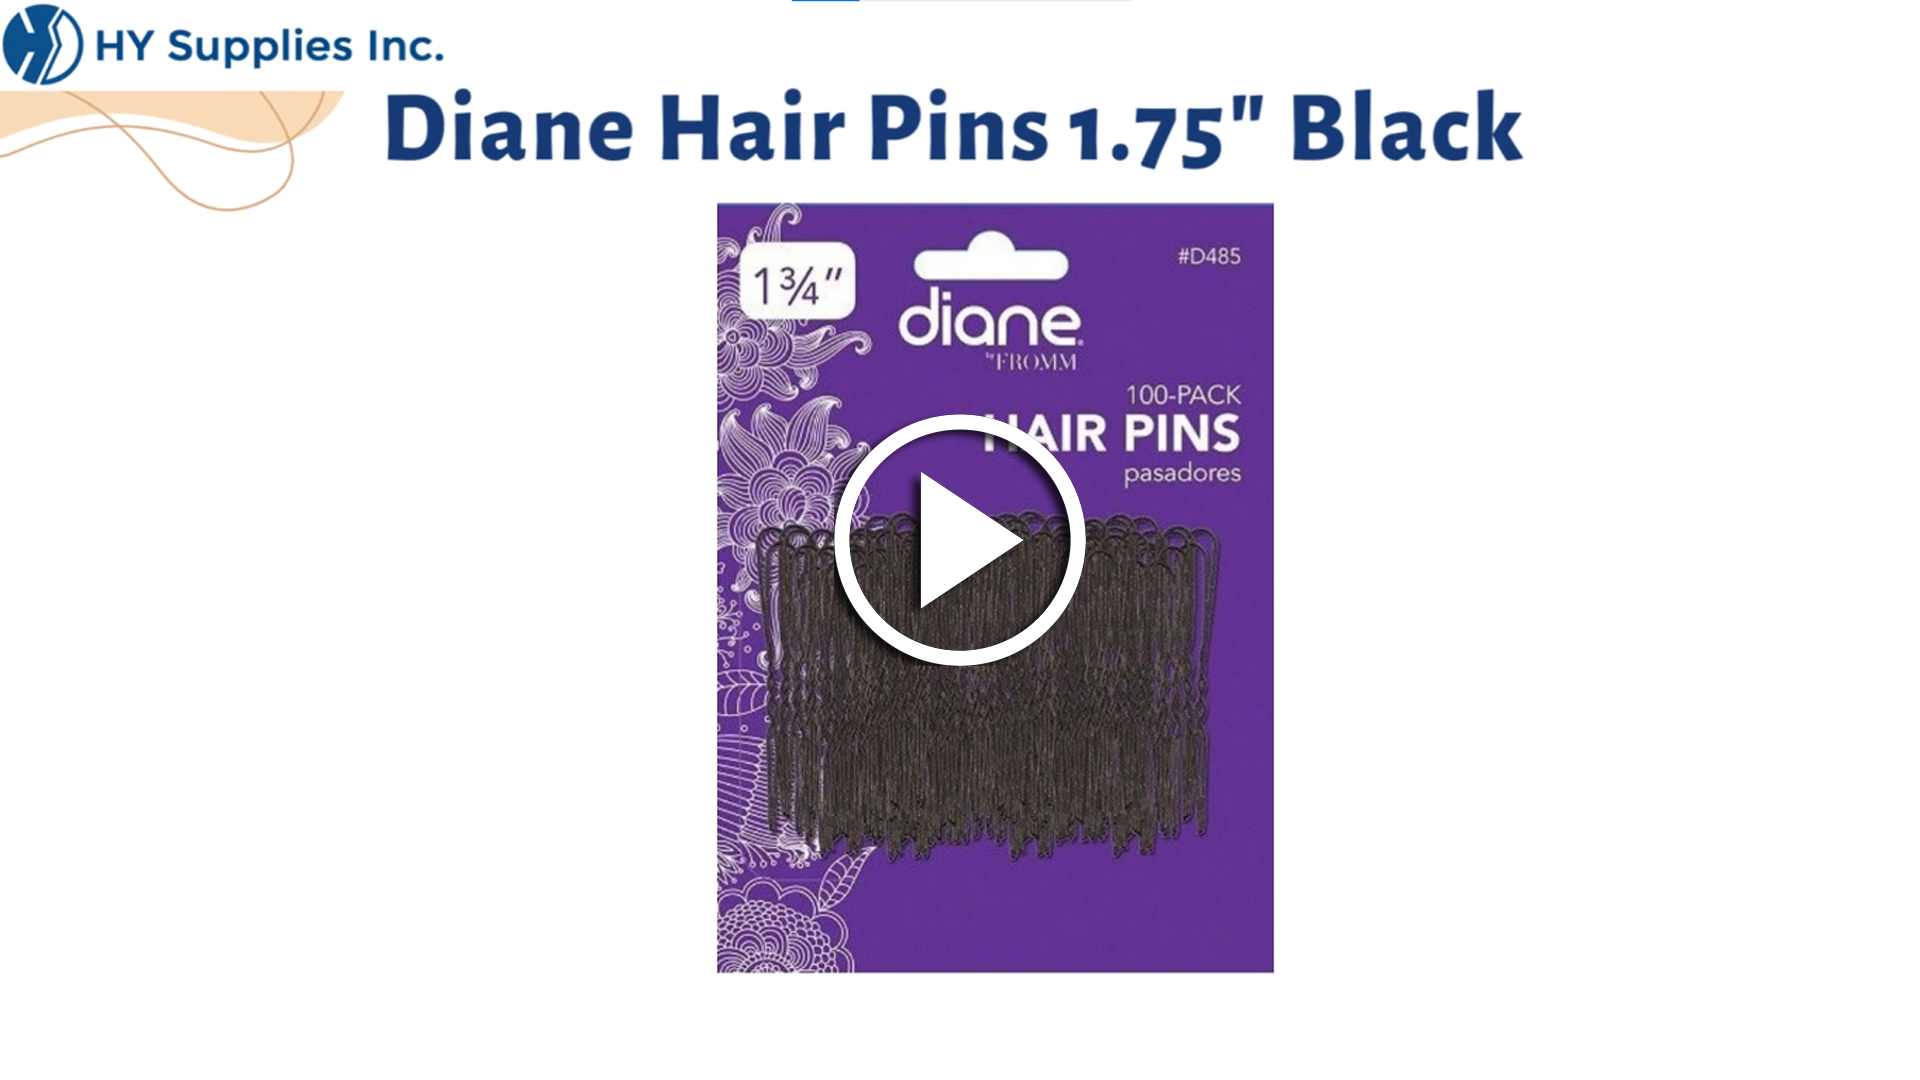 Diane 1.75" Black Hair Pins